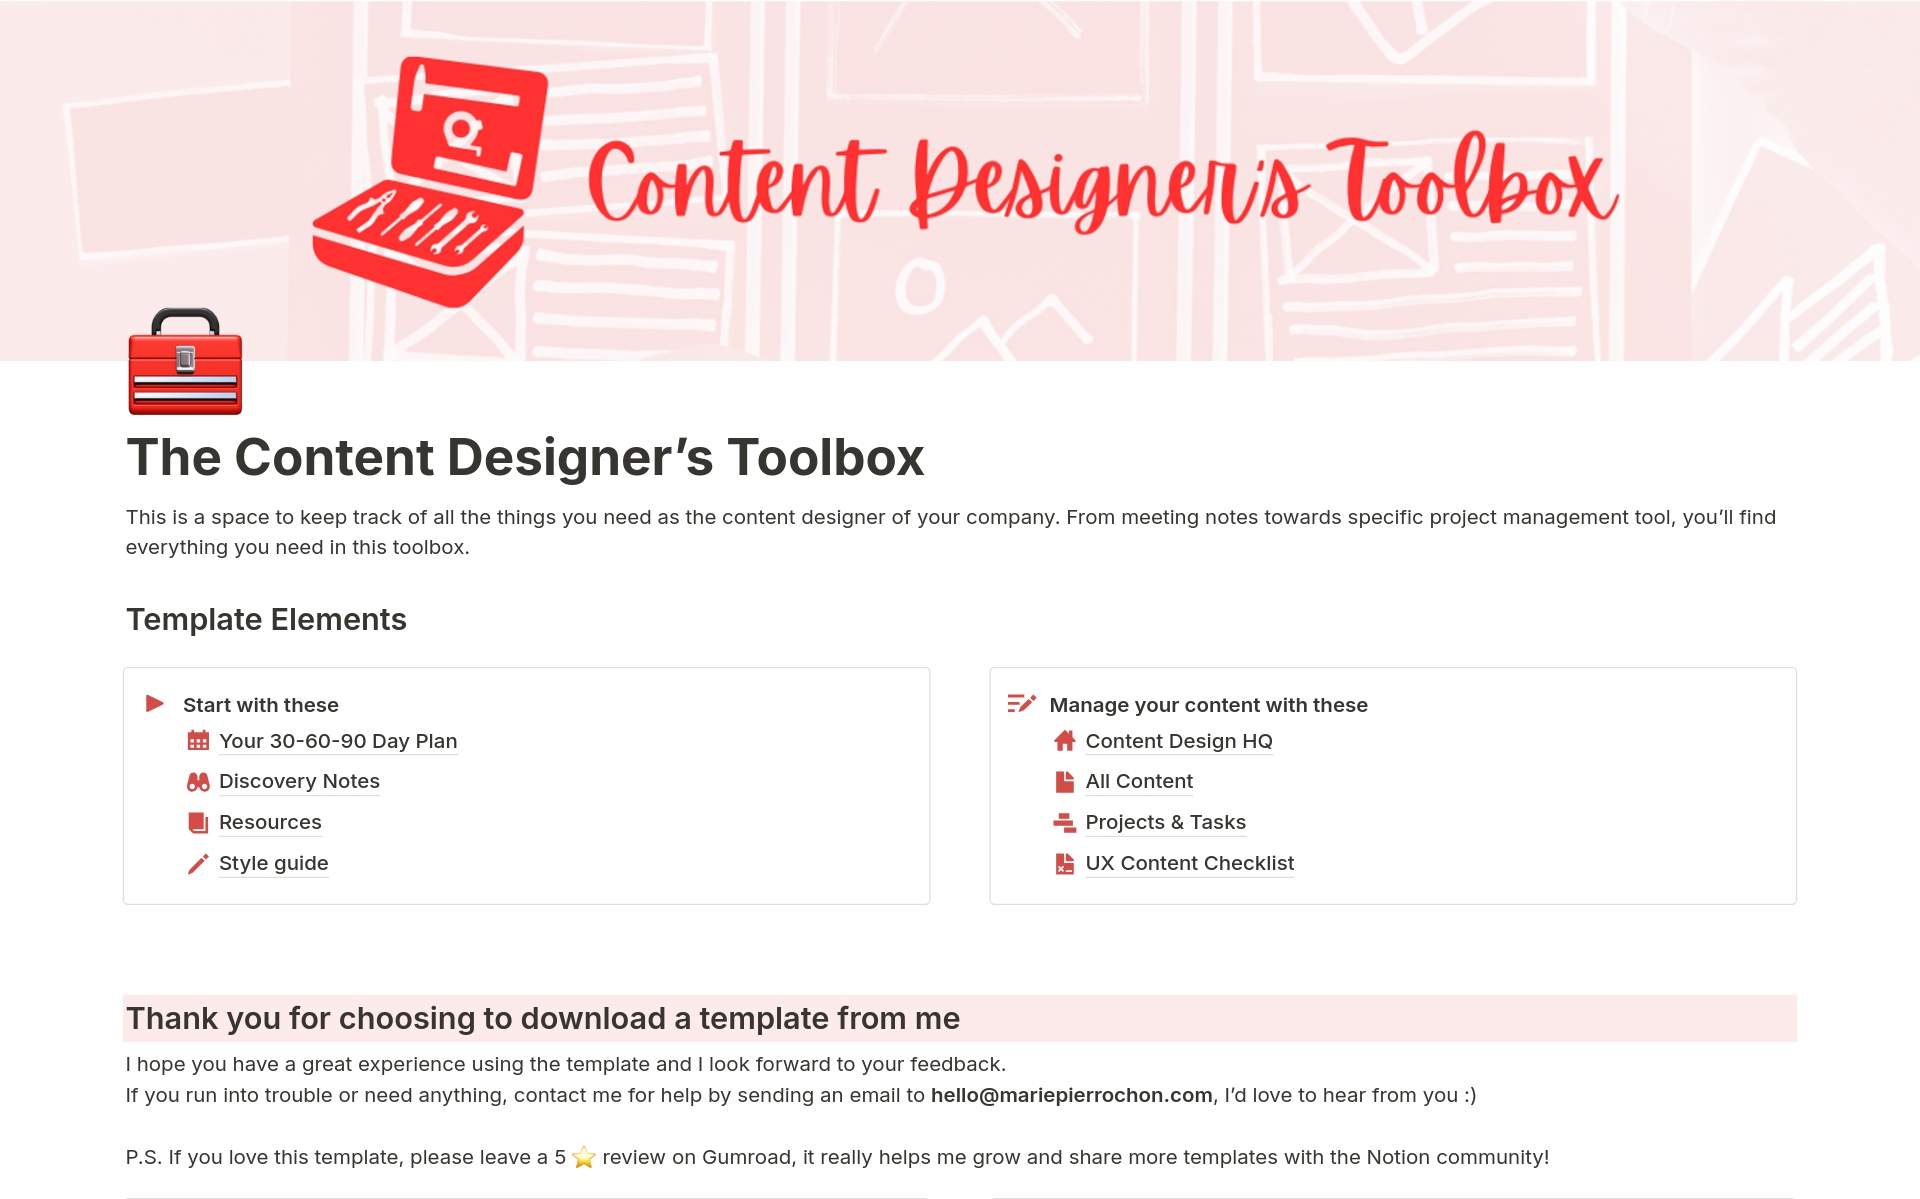 Uma prévia do modelo para Content Designer's Toolbox